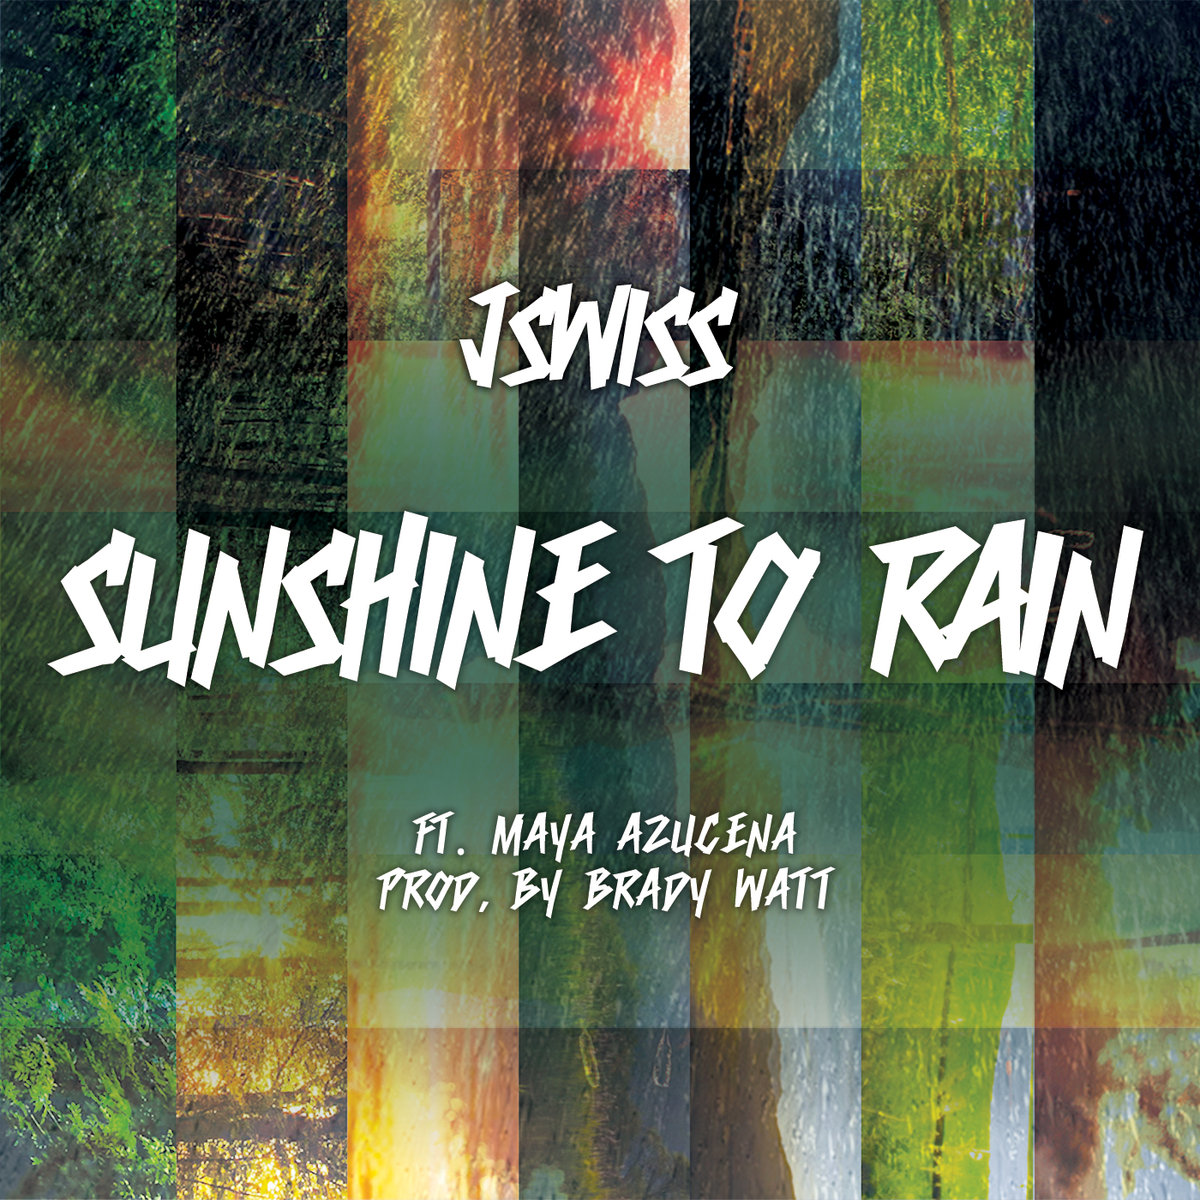 JSWISS – “Sunshine To Rain” Feat. Maya Azucena (Prod. By Brady Watt)